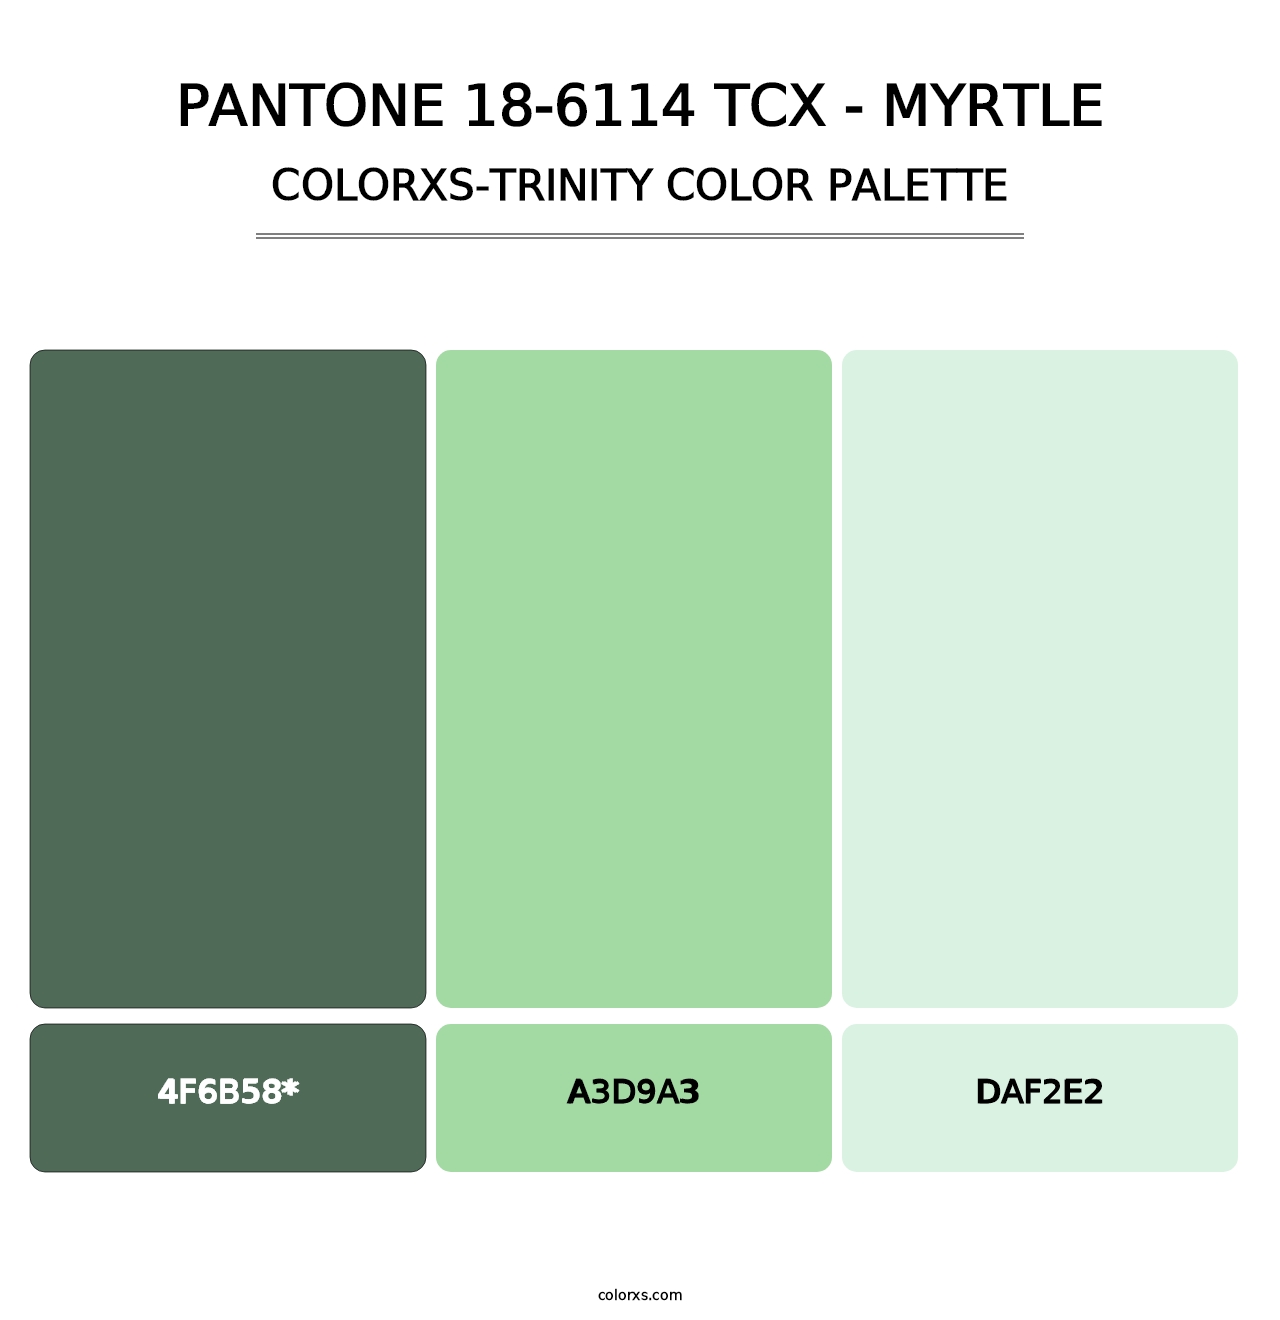 PANTONE 18-6114 TCX - Myrtle - Colorxs Trinity Palette